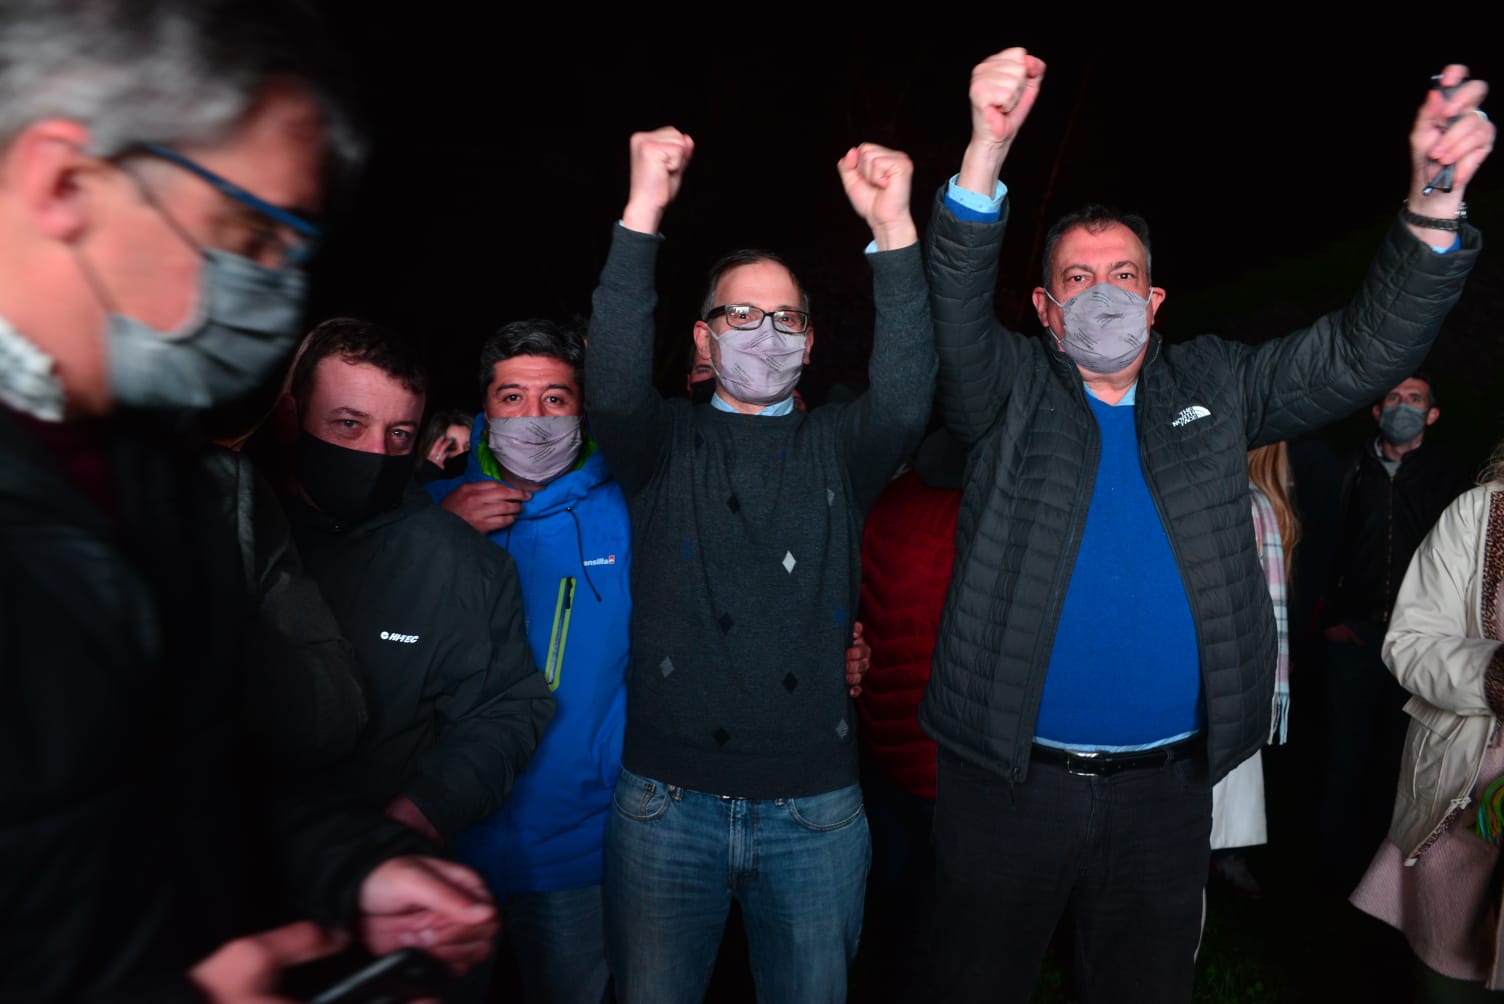 Agustín Domingo con puños arriba, celebra su triunfo en Bariloche y en toda la provincia. Foto: Chino Leiva